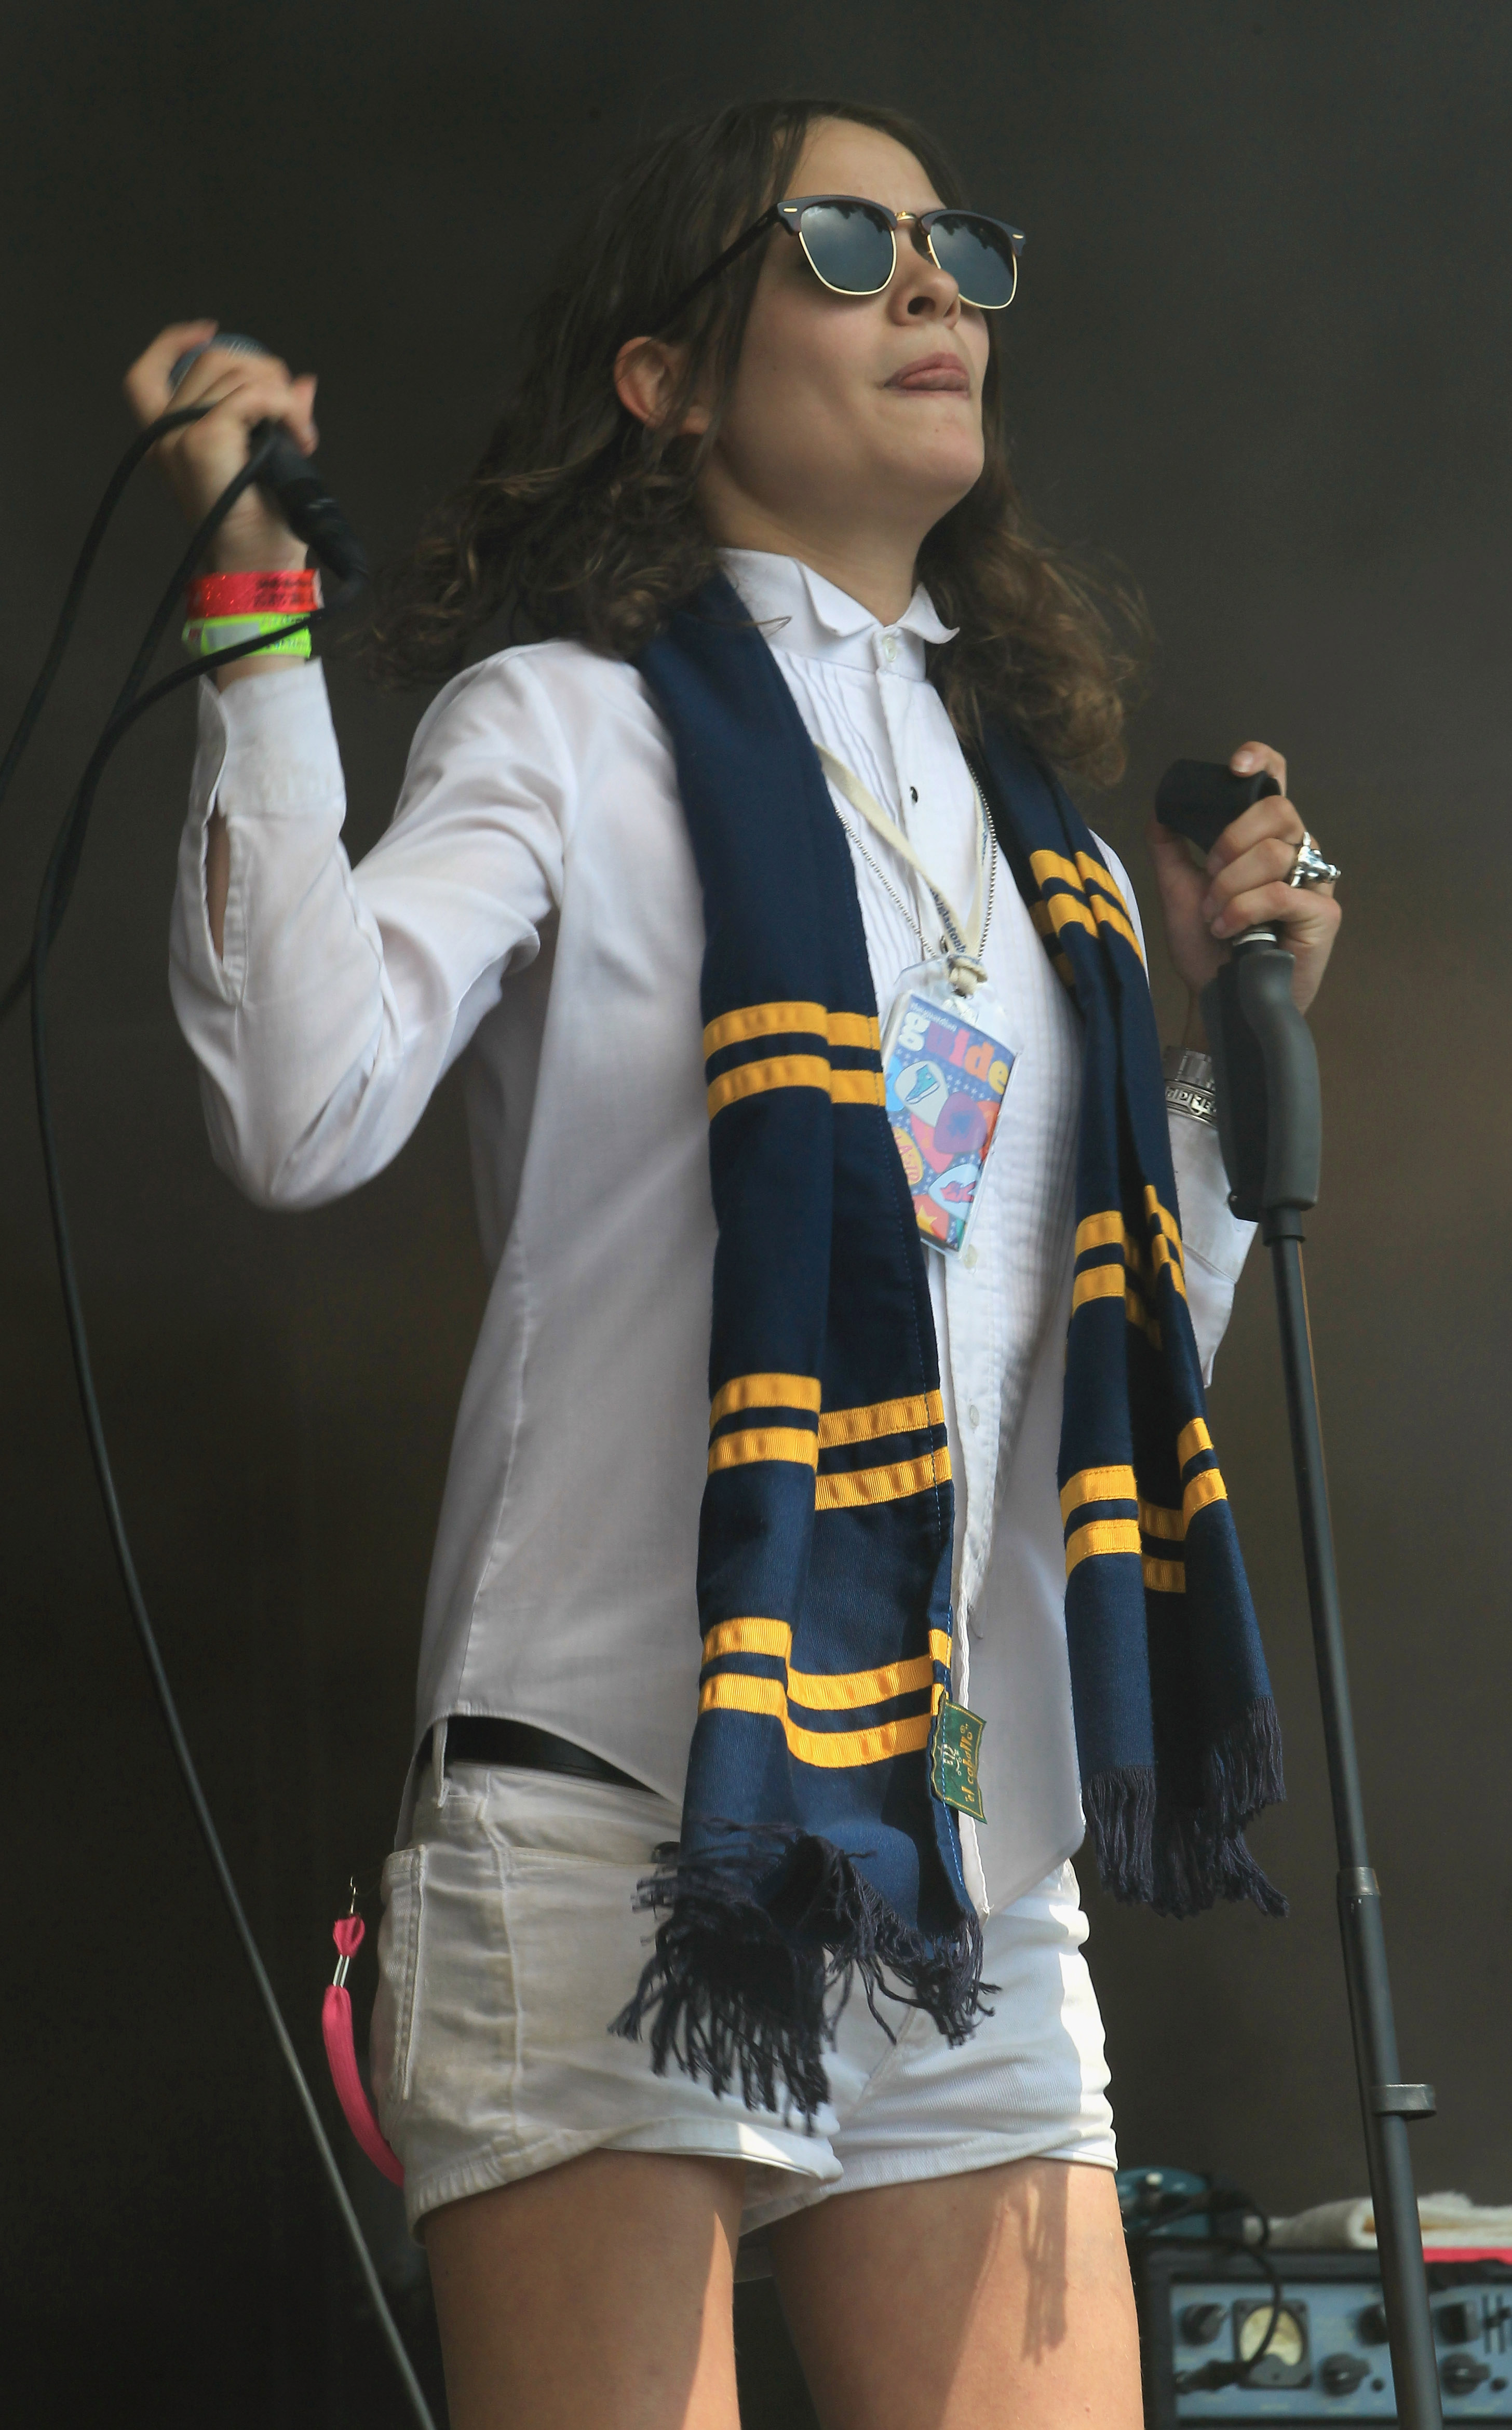 Eliot Sumner actúa en el Festival de Glastonbury el 26 de junio de 2010 en Glastonbury, Inglaterra | Fuente: Getty Images